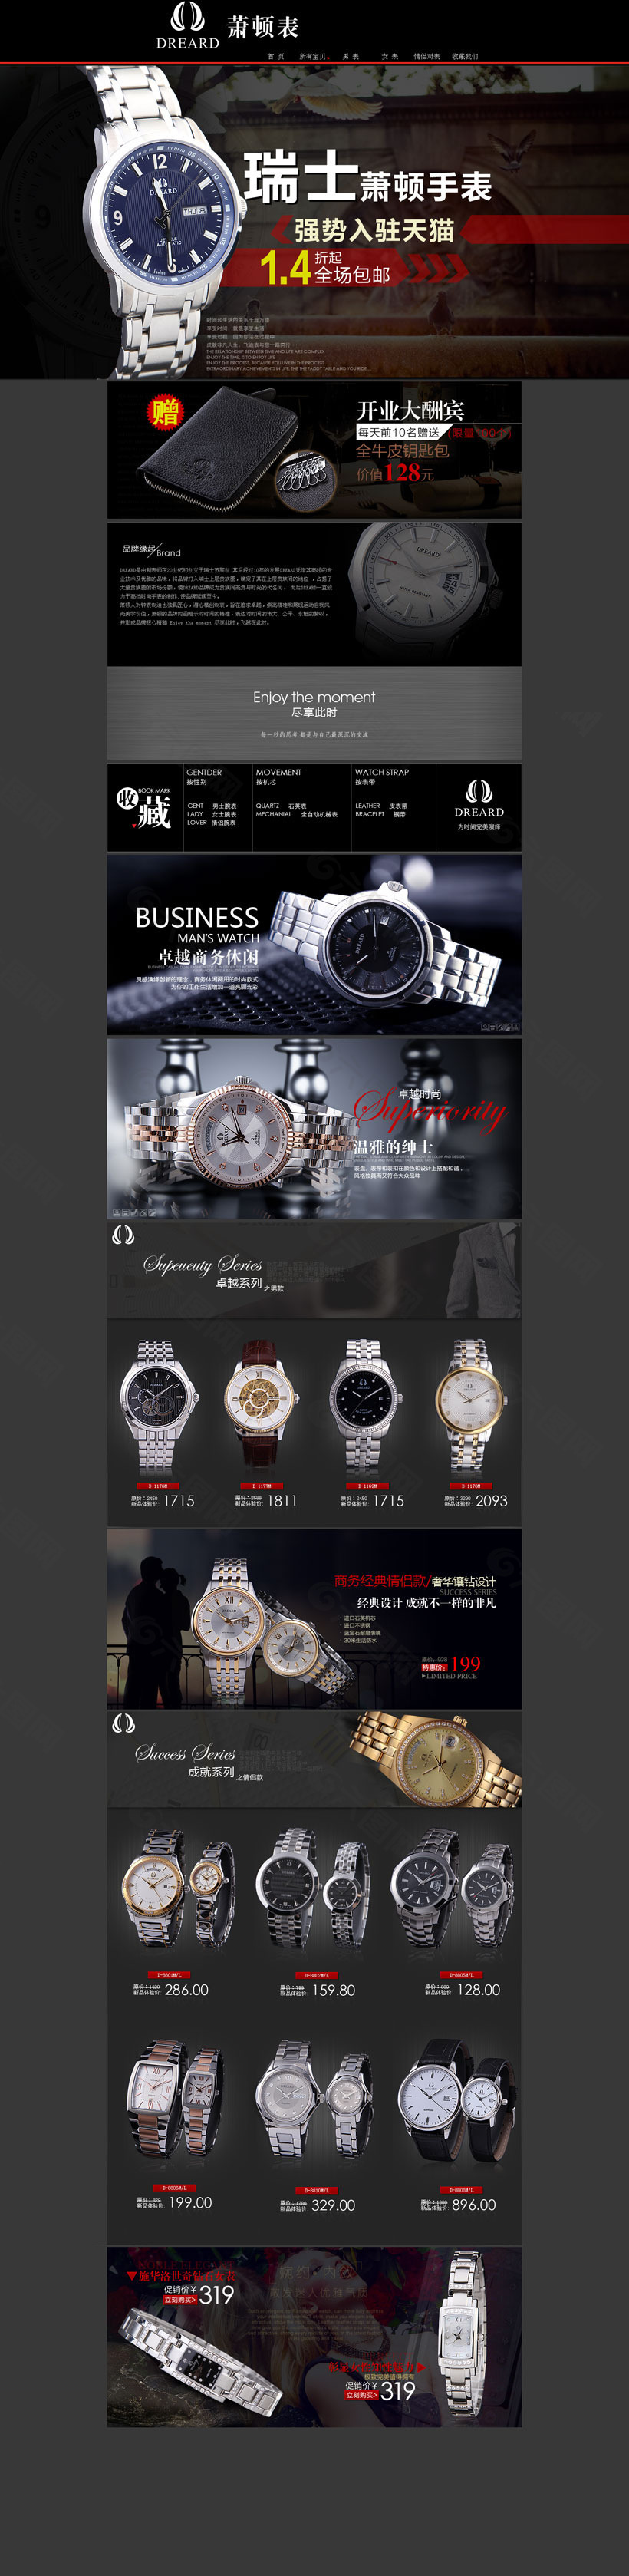 淘宝瑞士手表促销页面设计PSD素材